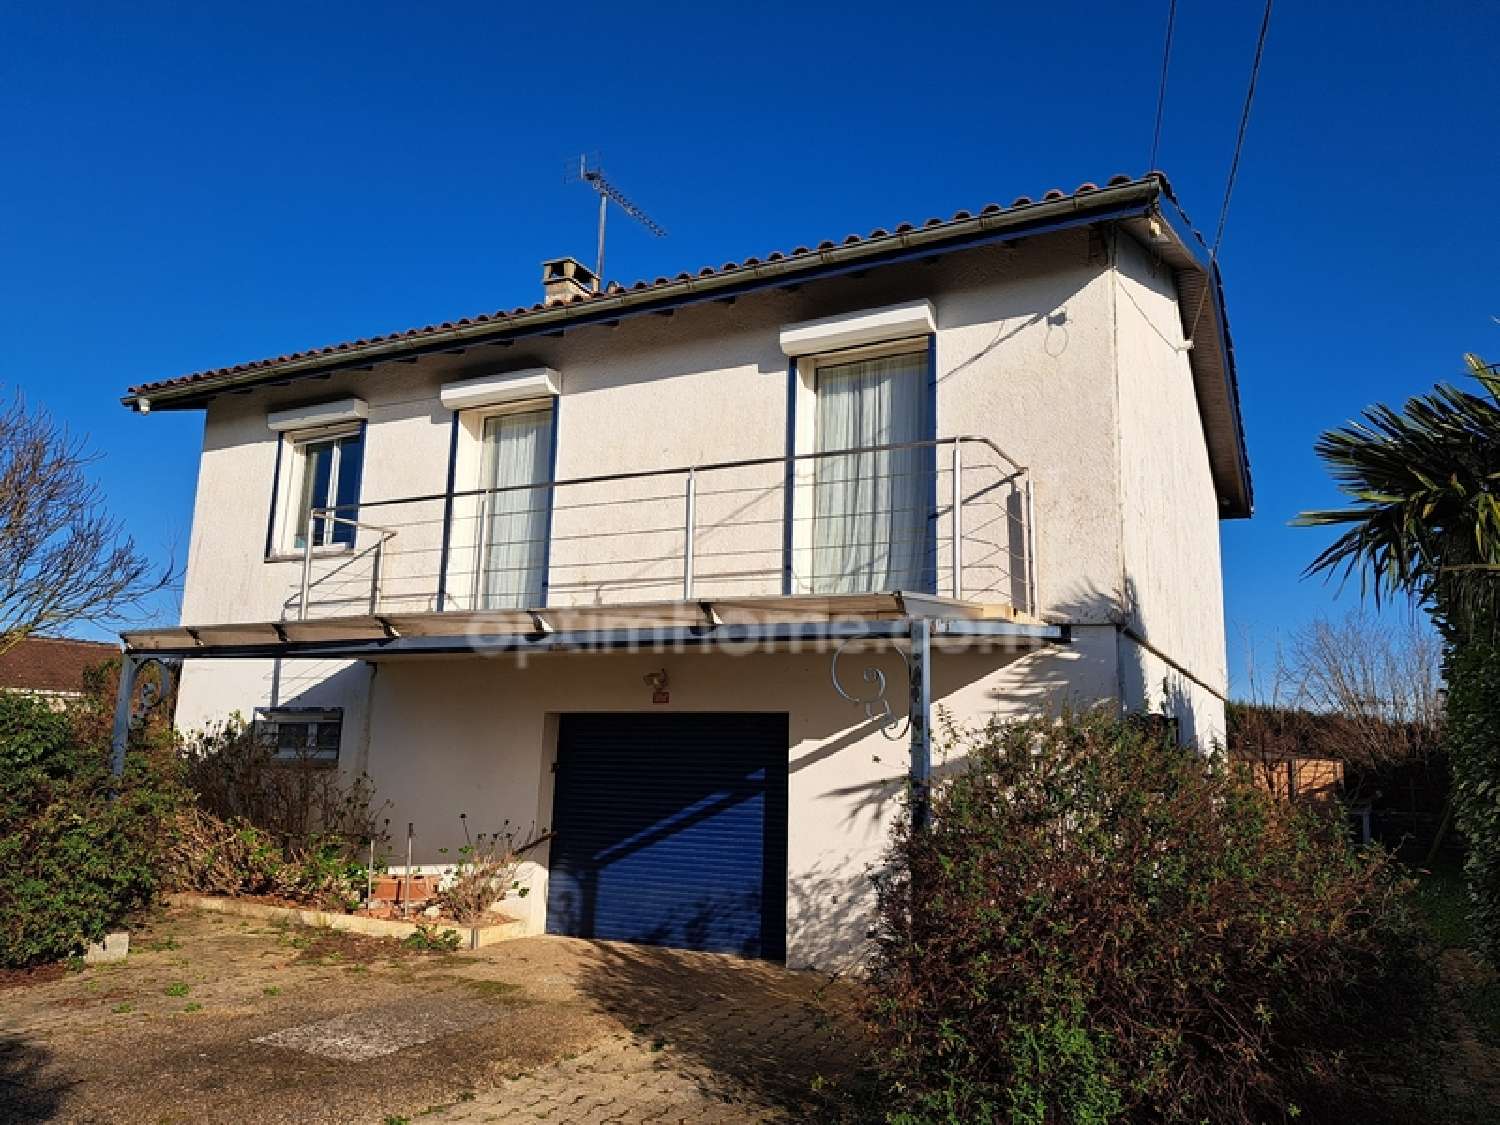  à vendre maison Orion Pyrénées-Atlantiques 1